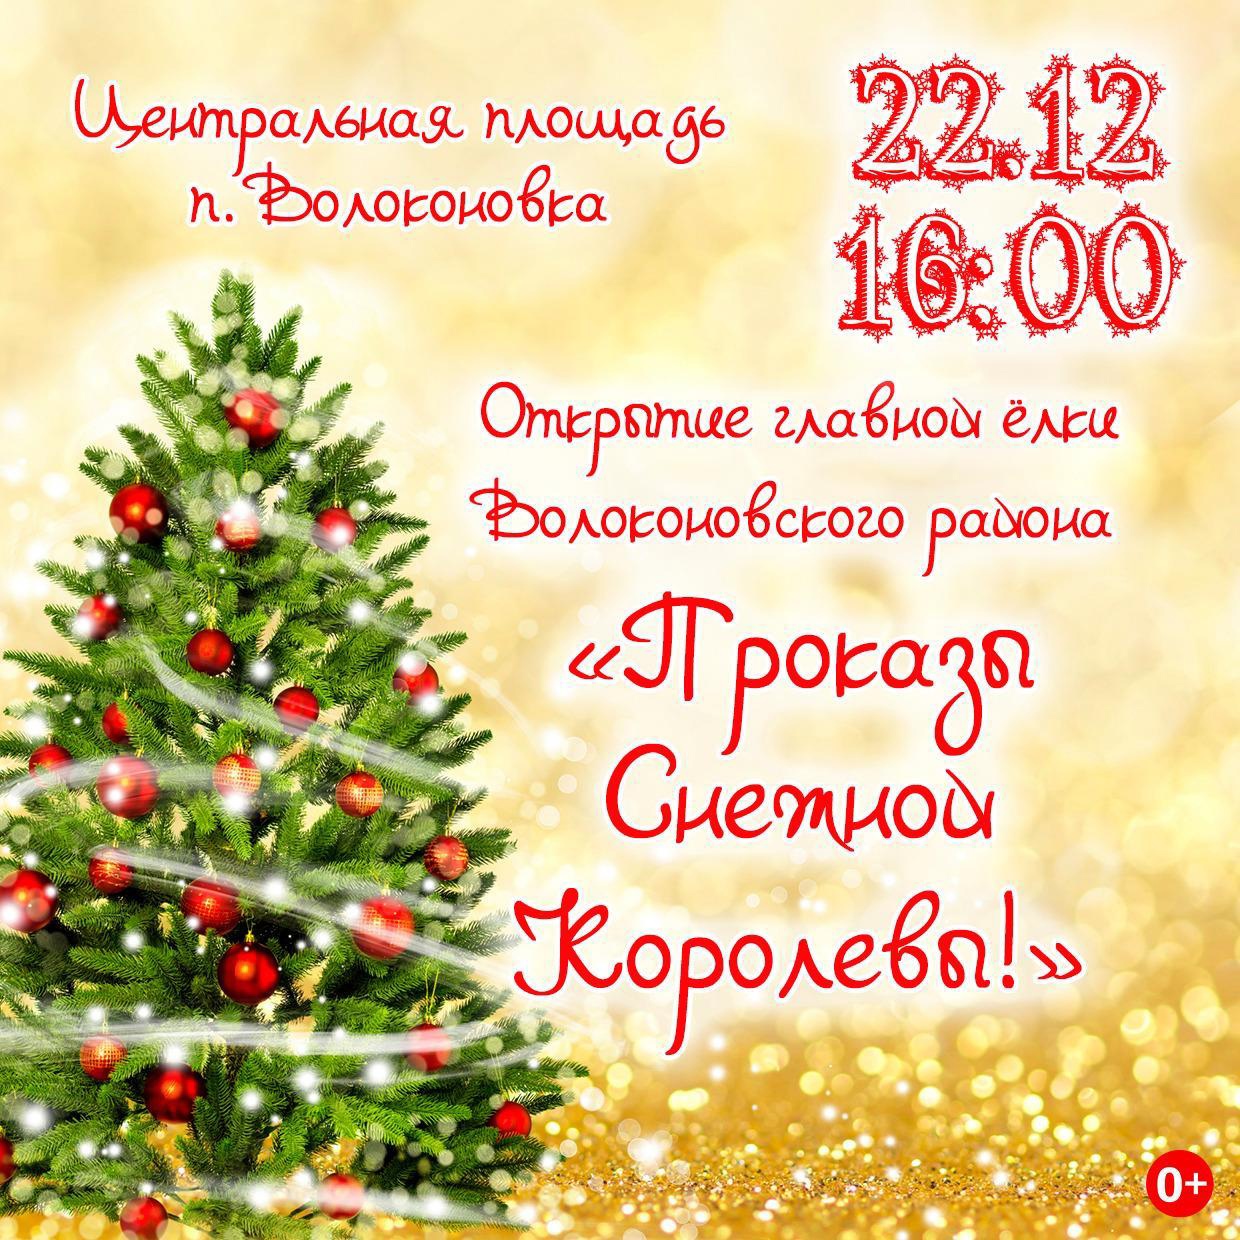 Приглашаем всех желающих на открытие главной ёлки Волоконовского района!.